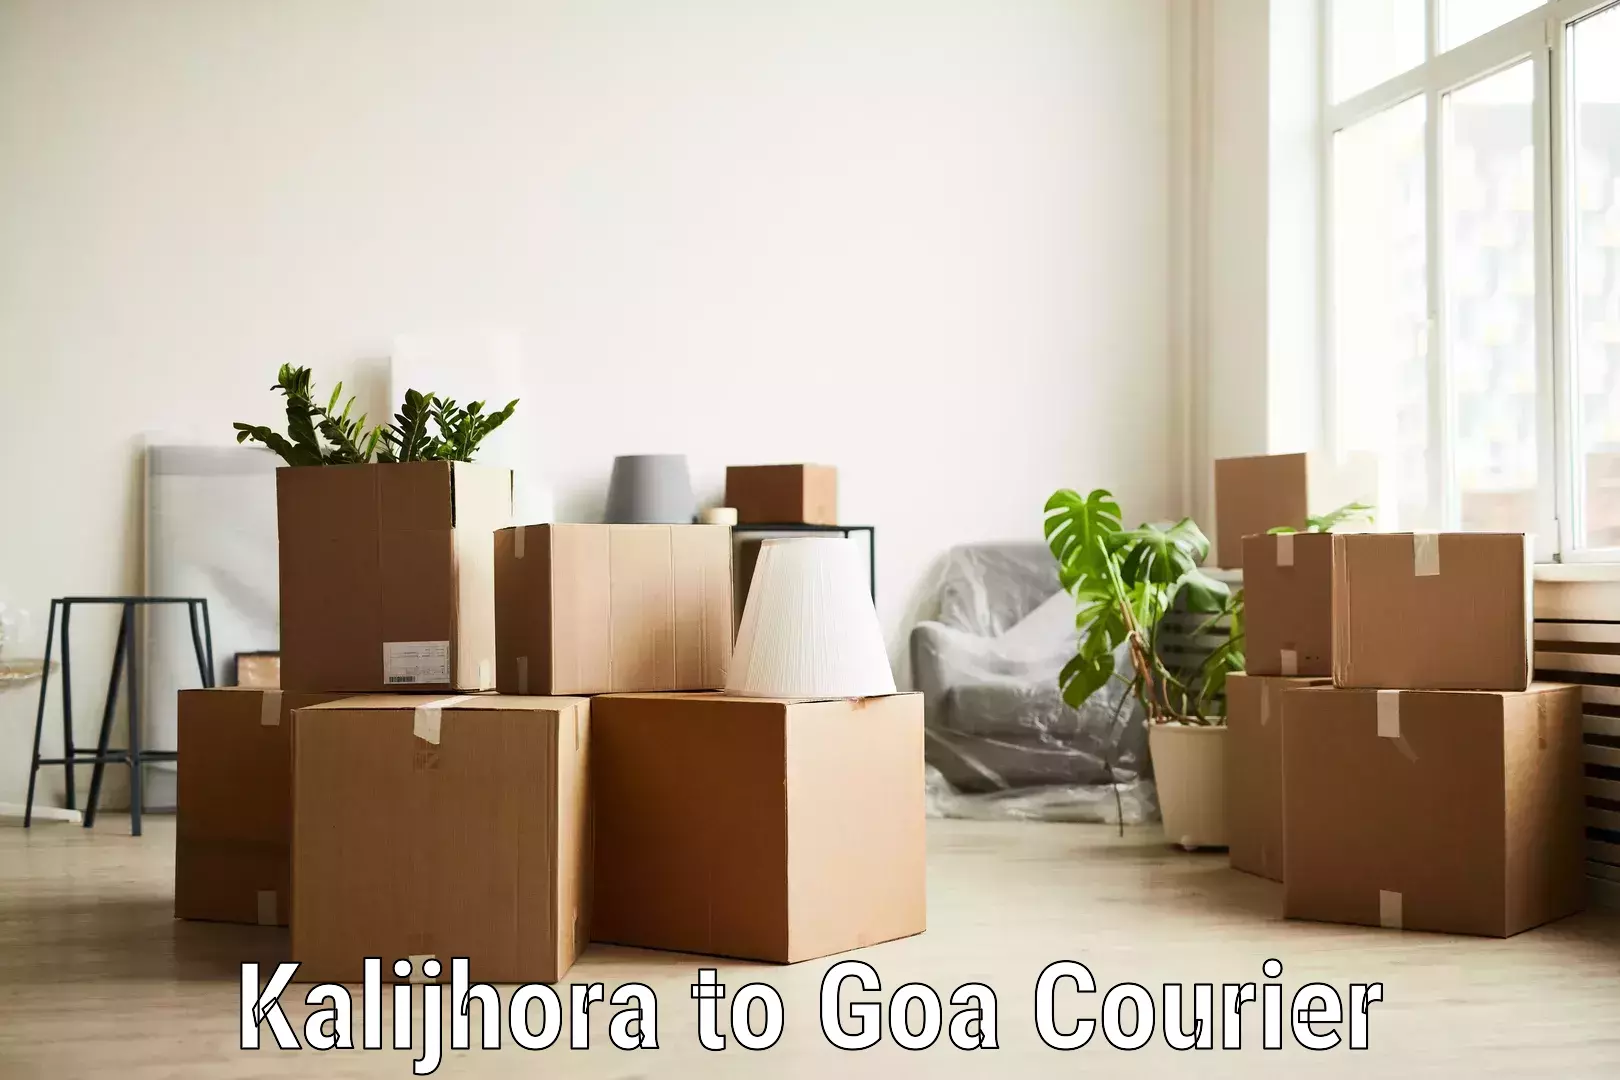 Door-to-door freight service Kalijhora to Goa